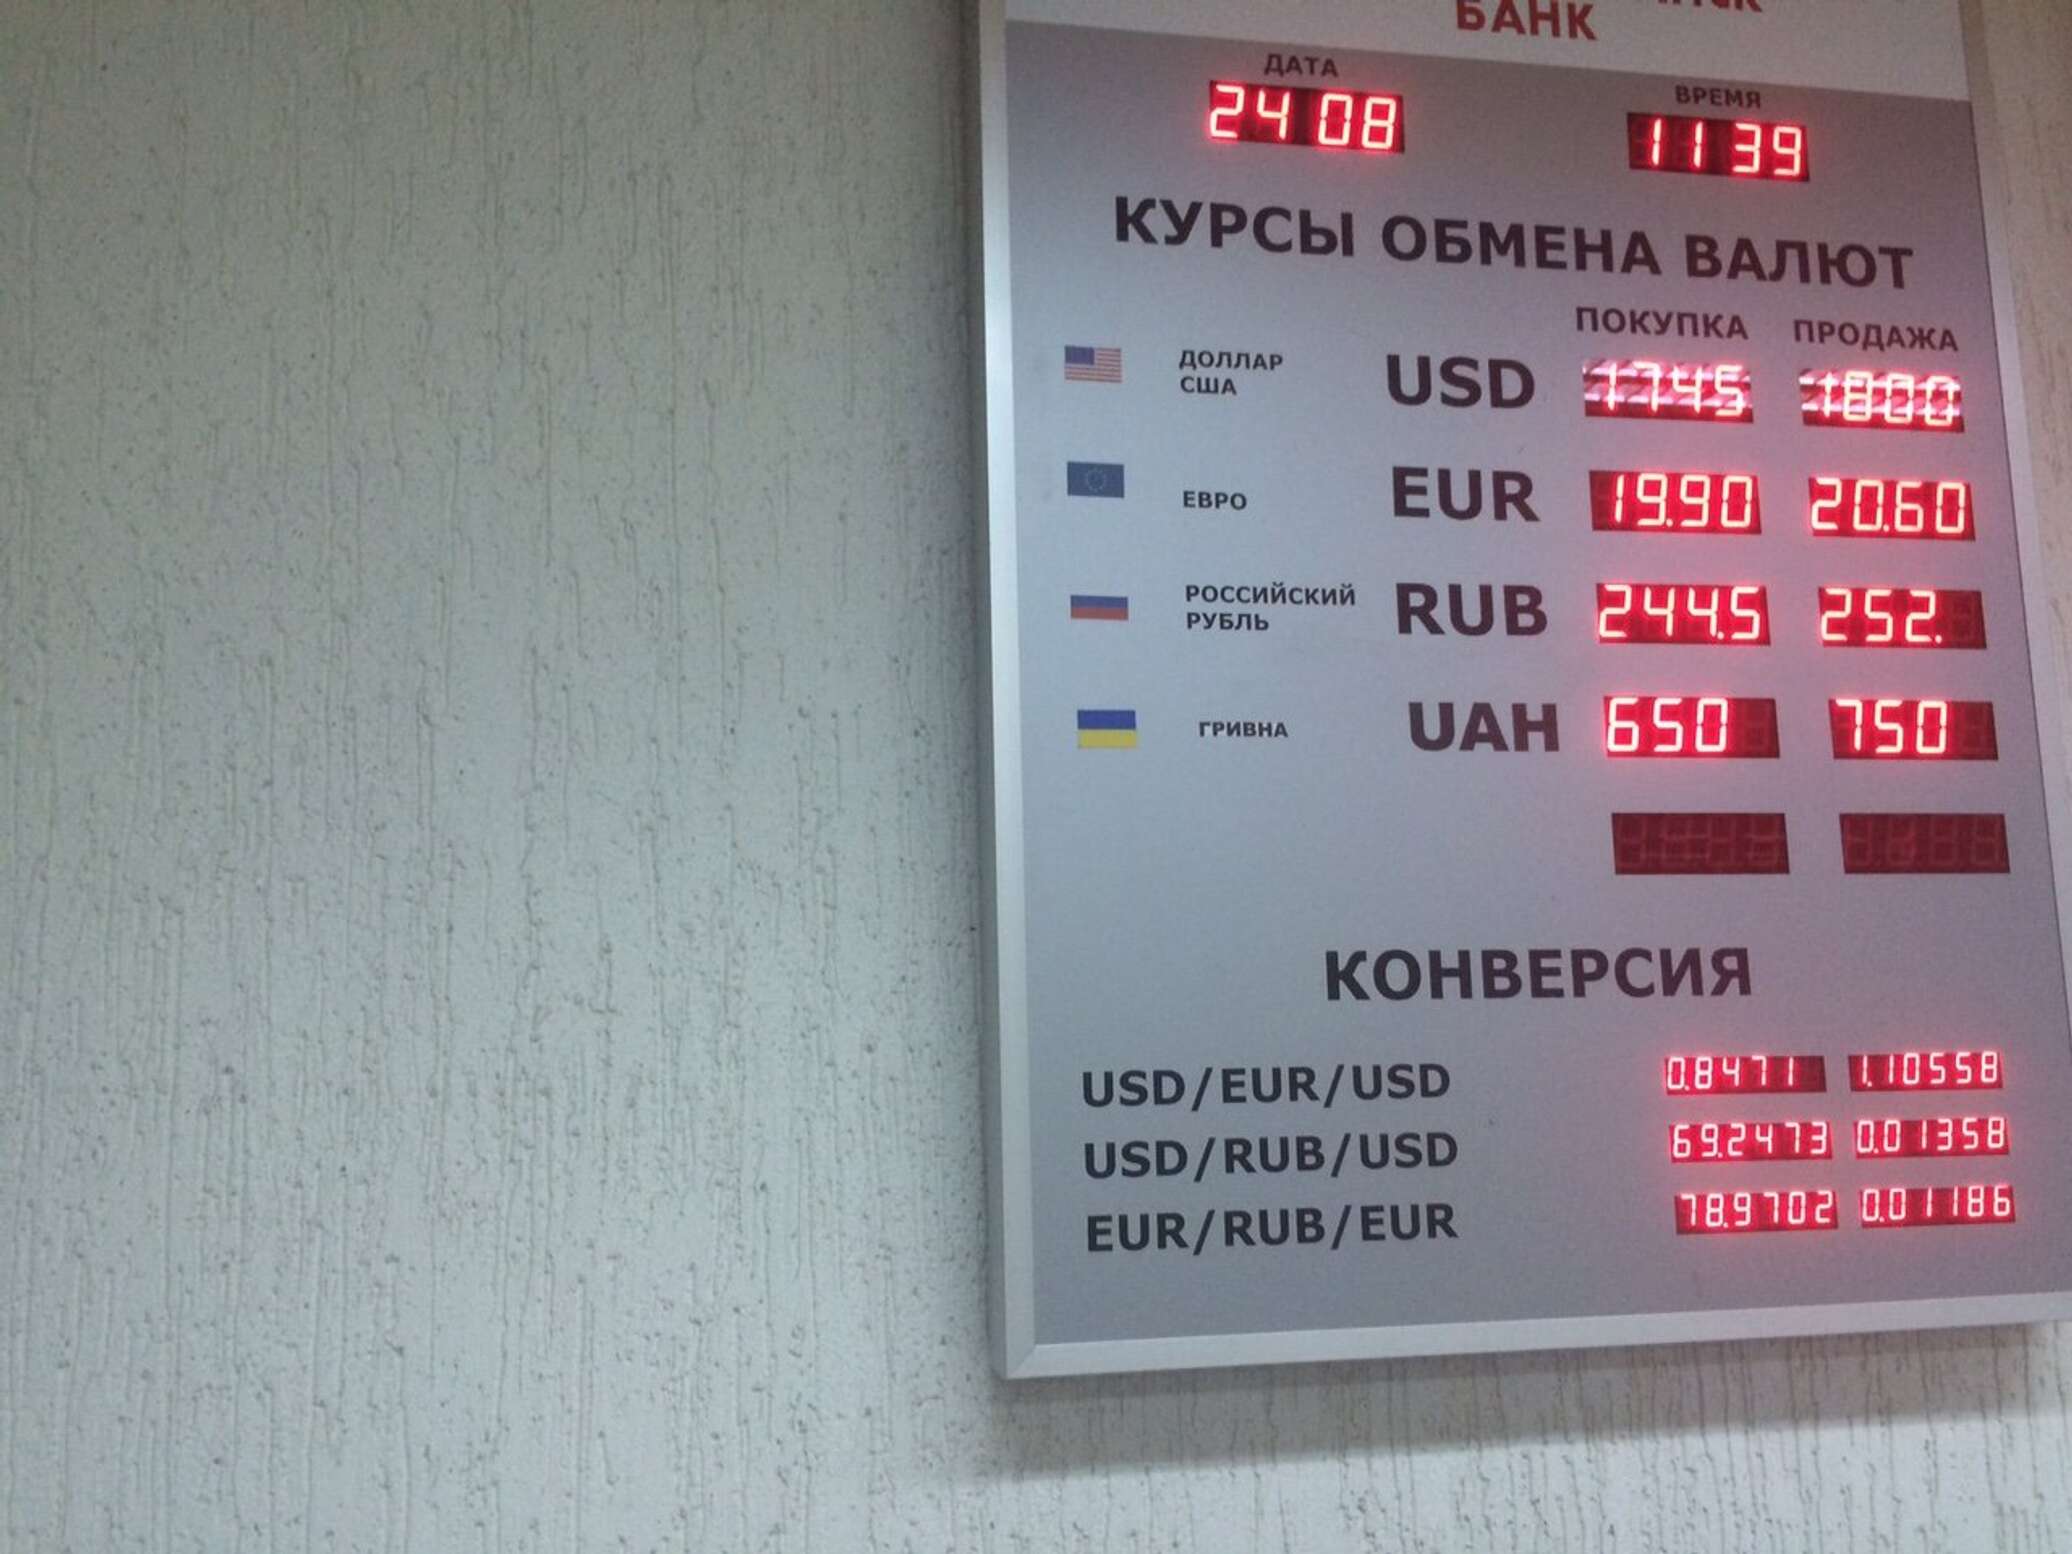 Банки белоруссии валют. Купля продажа валюты. Курсы валют в рублях. Курс валют Нацбанка. Курсы валюты Нацбанка Беларусь.